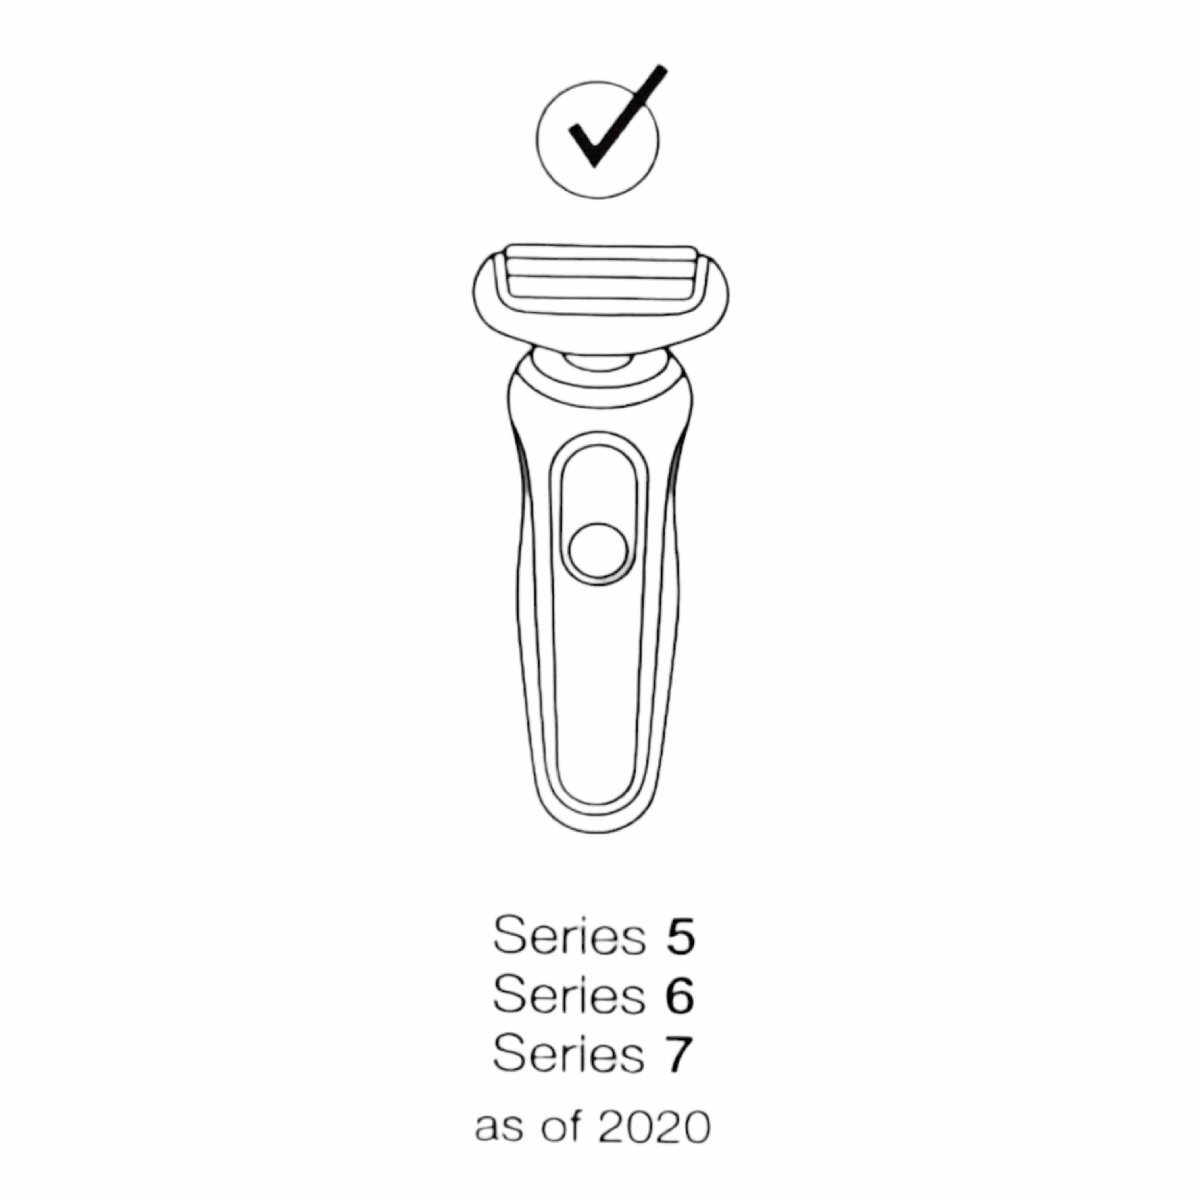 Braun Barttrimmer Aufsatz Series 2020 , 29,99 5 3 für ab 2 6 1 € - Aufsätze 7 5